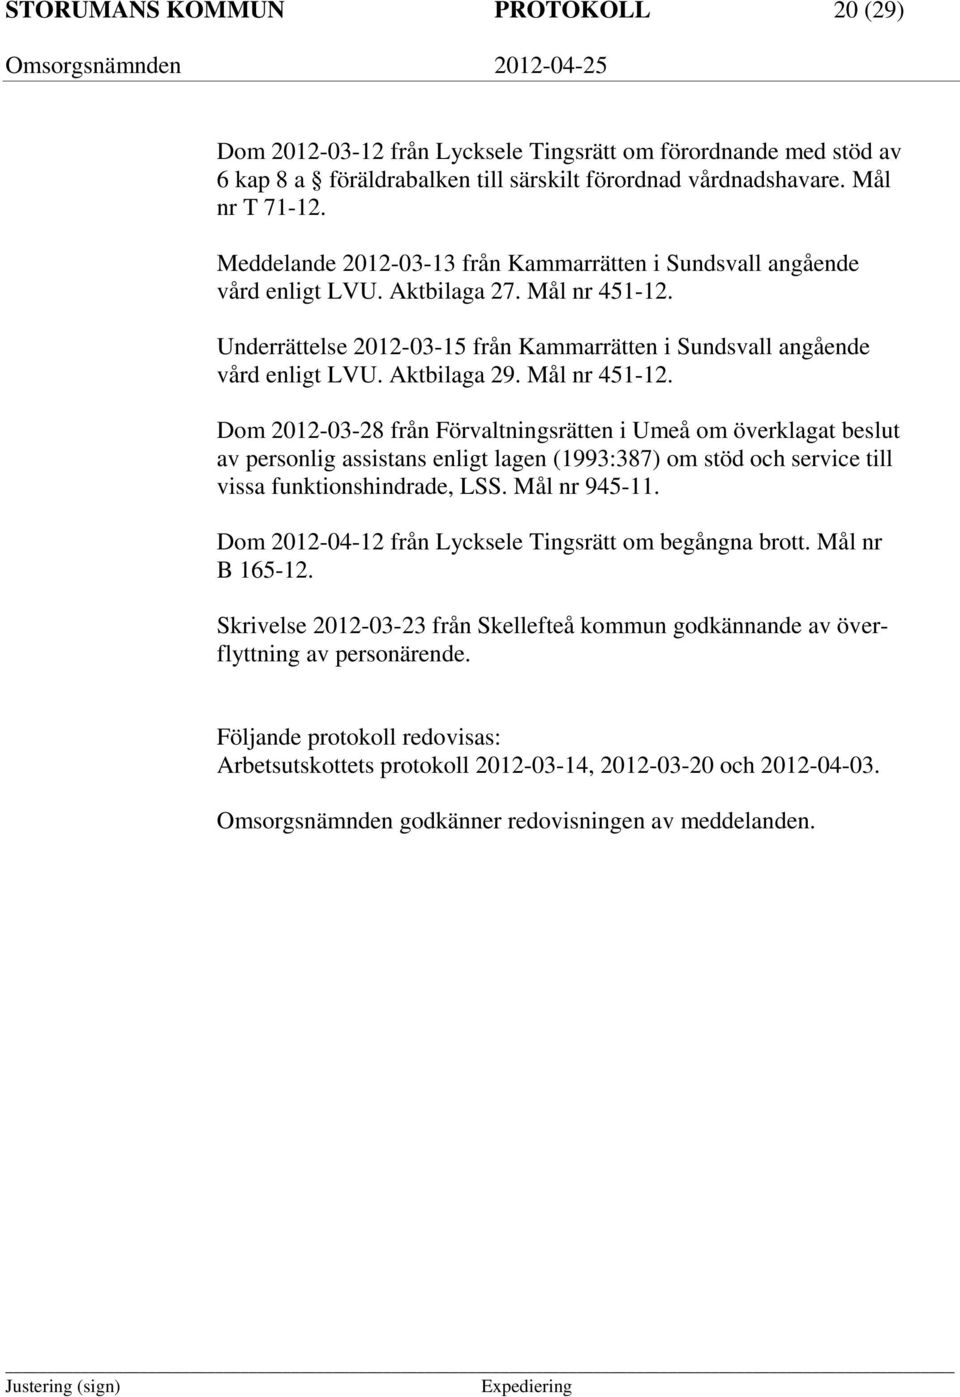 Aktbilaga 29. Mål nr 451-12. Dom 2012-03-28 från Förvaltningsrätten i Umeå om överklagat beslut av personlig assistans enligt lagen (1993:387) om stöd och service till vissa funktionshindrade, LSS.